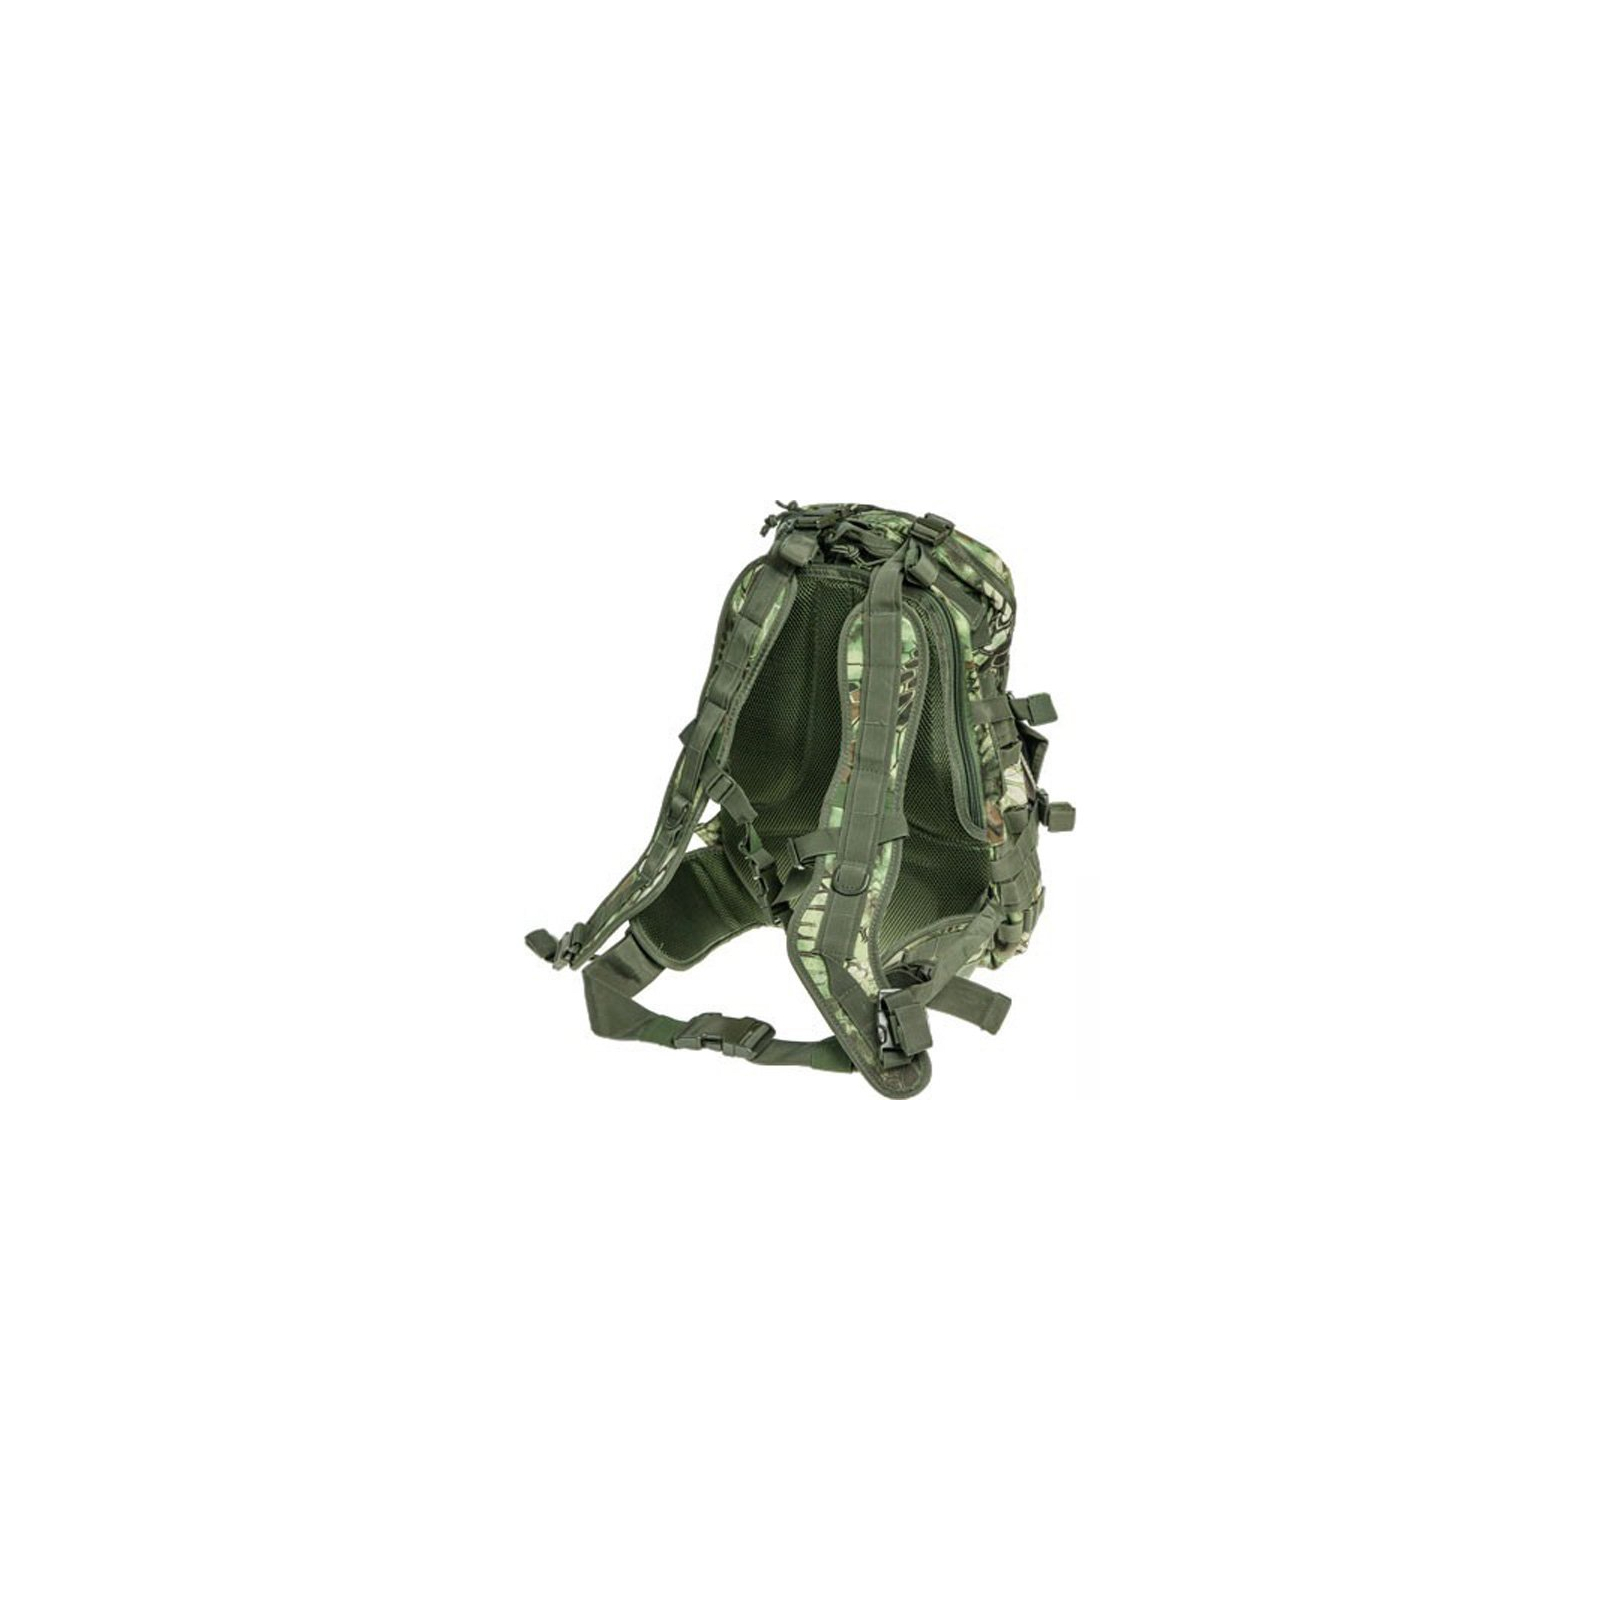 Рюкзак туристичний Skif Tac тактический патрульный 35 литров kryptek green (GB0110-KGR) зображення 2